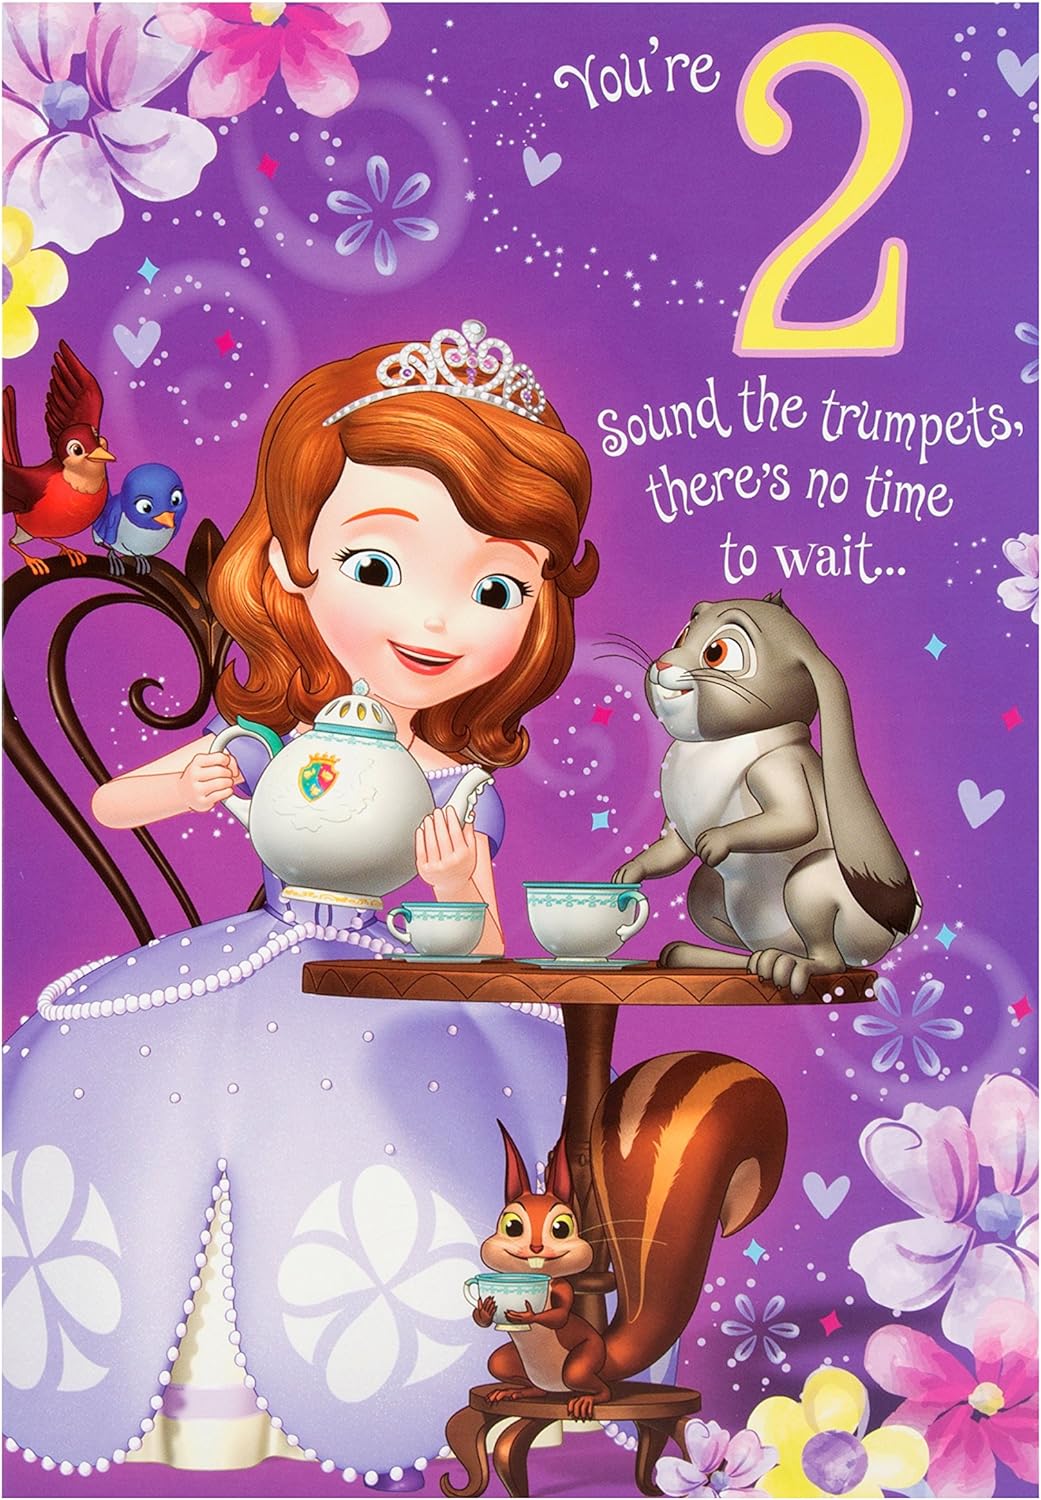 Disney Princess Sofia 2nd Birthday Card Let's Celebrate